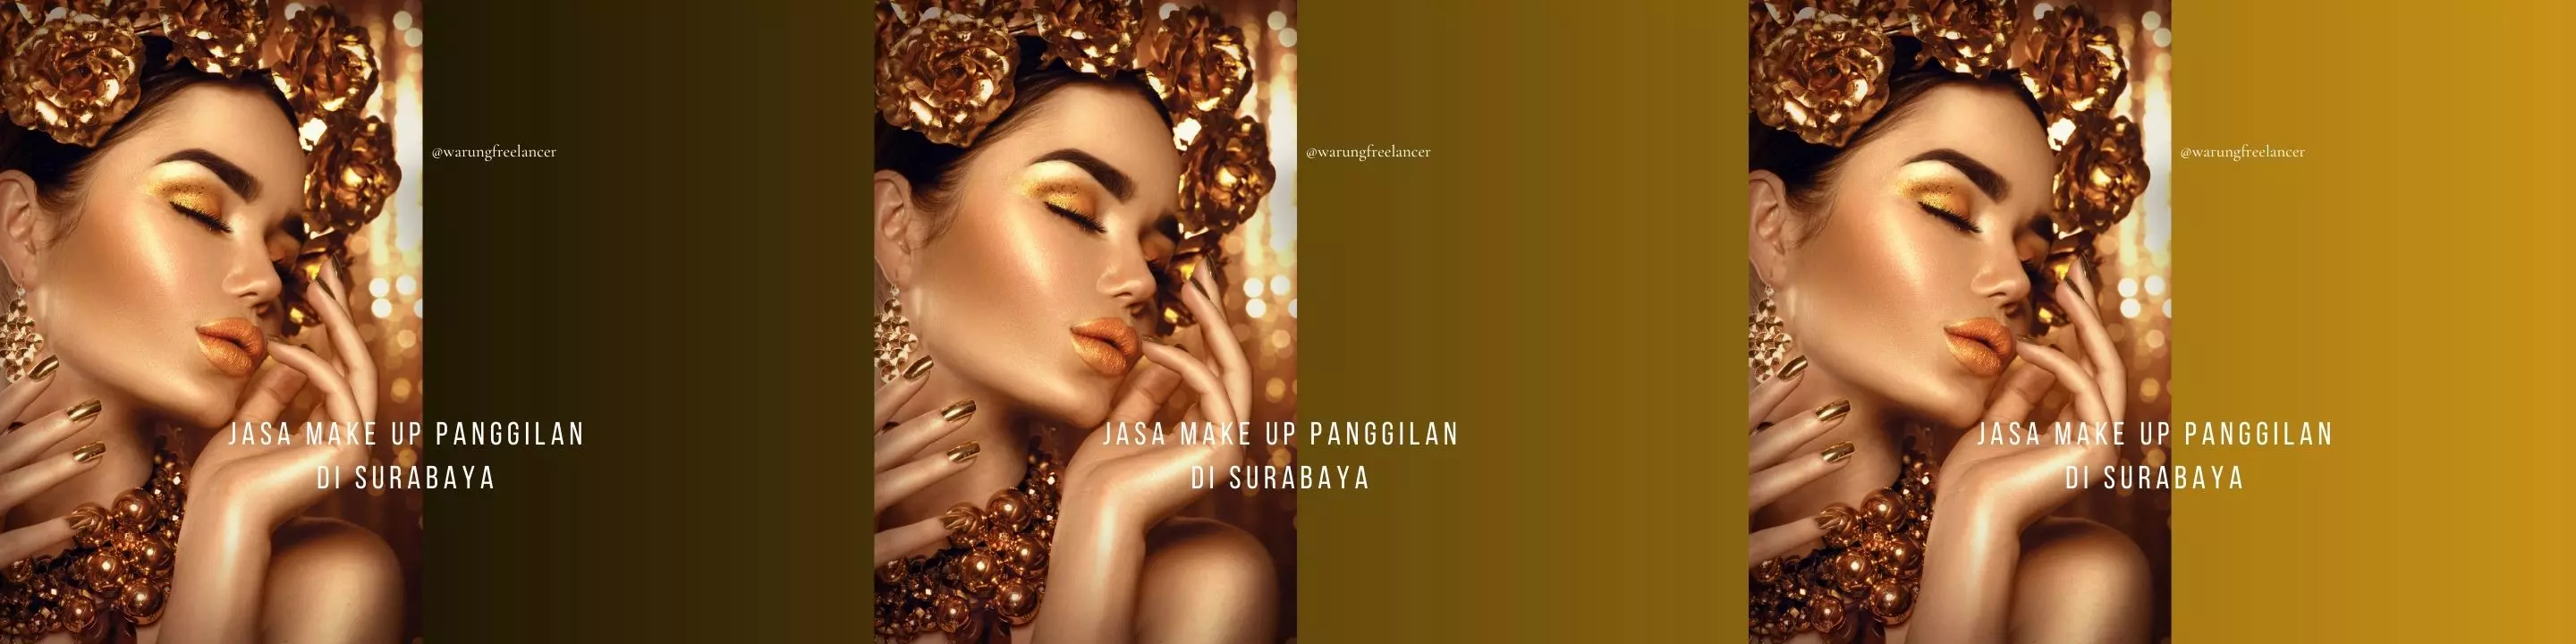 Jasa Make Up Panggilan di Surabaya